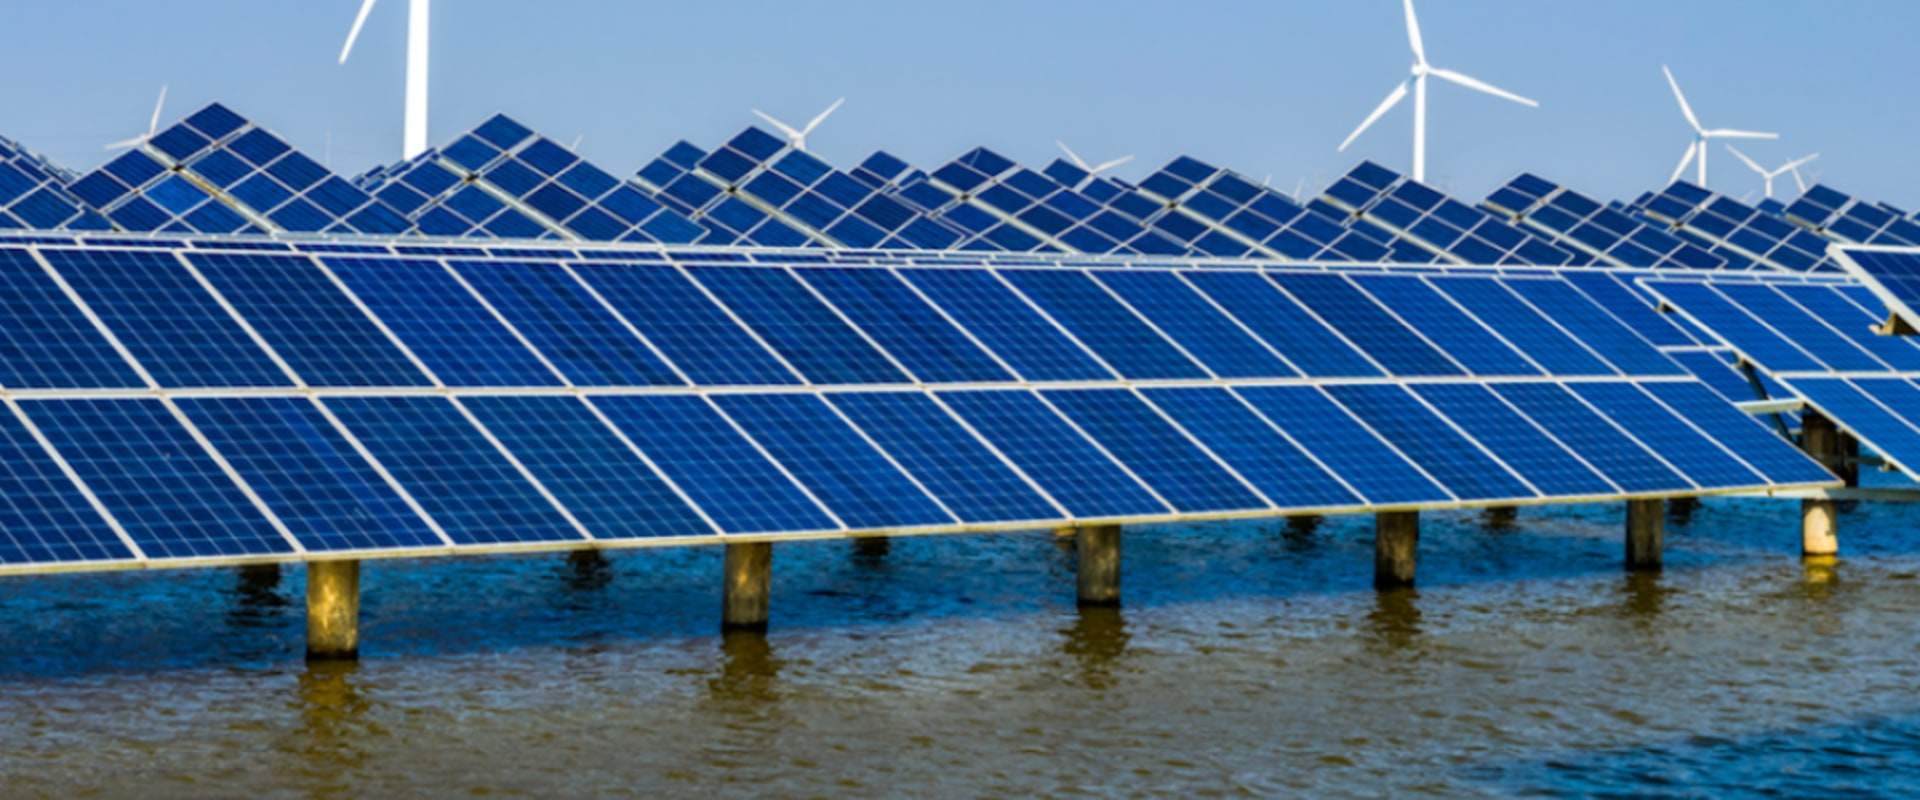 The Growing Renewable Energy Industry in Coral Springs, FL